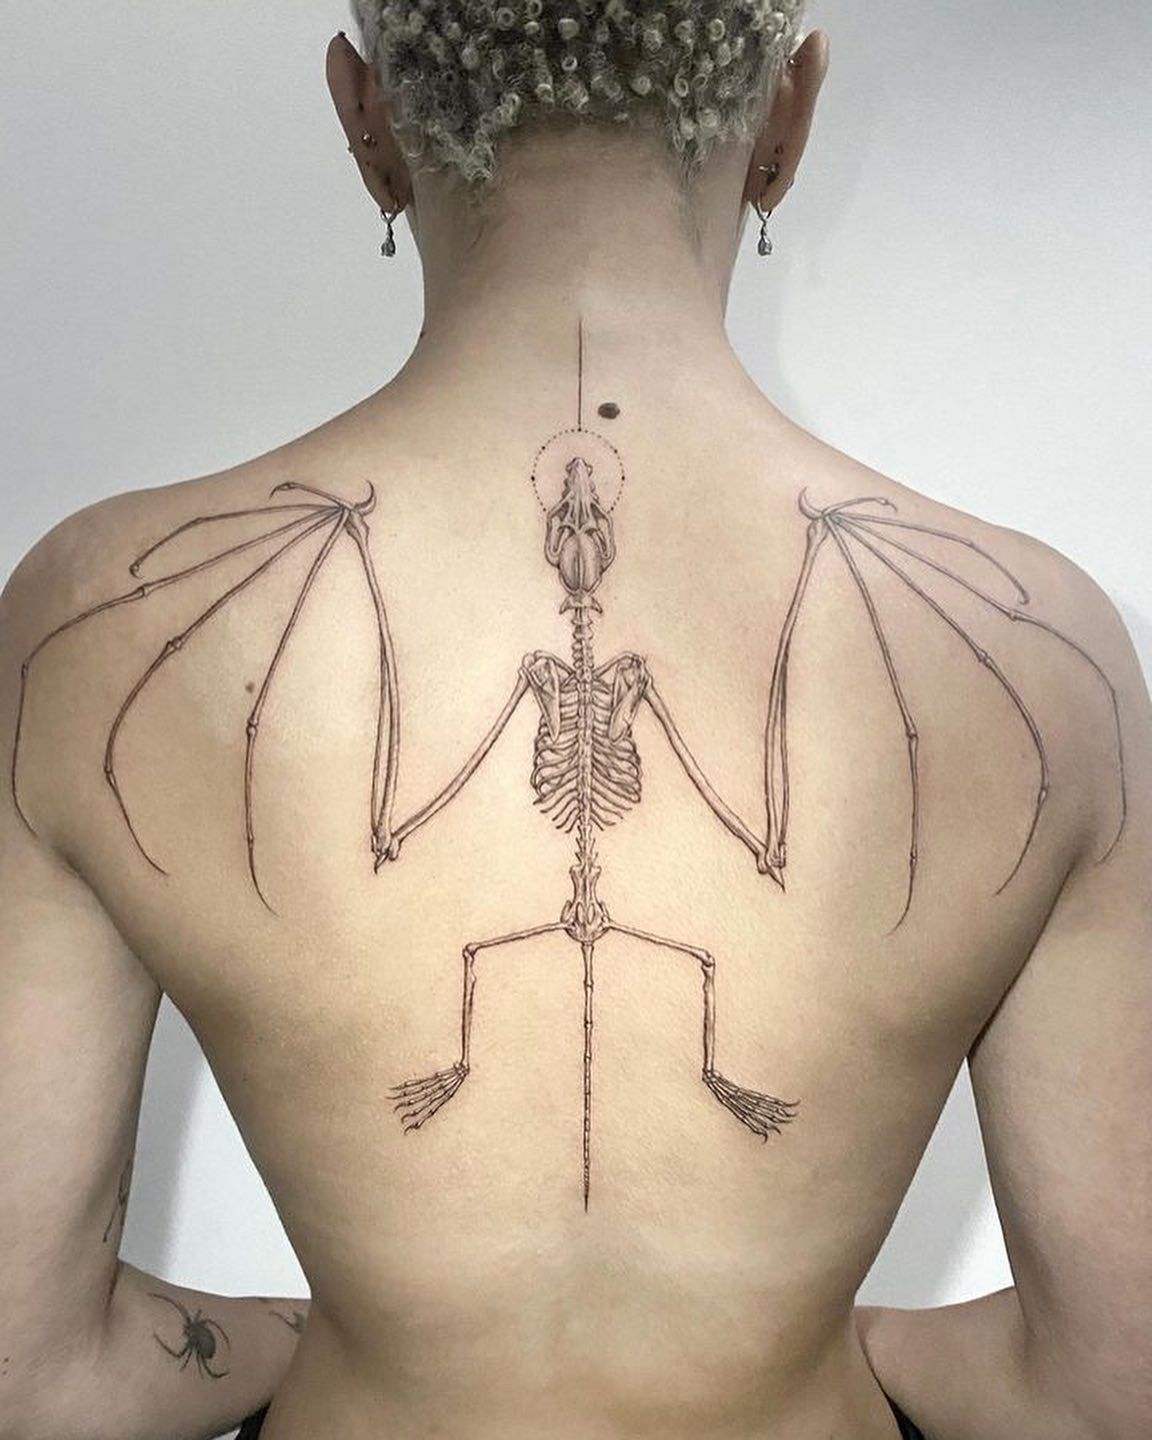 史上最悪の不謹慎タトゥー”と物議！ 背中に巨大なコウモリの骸骨タトゥー